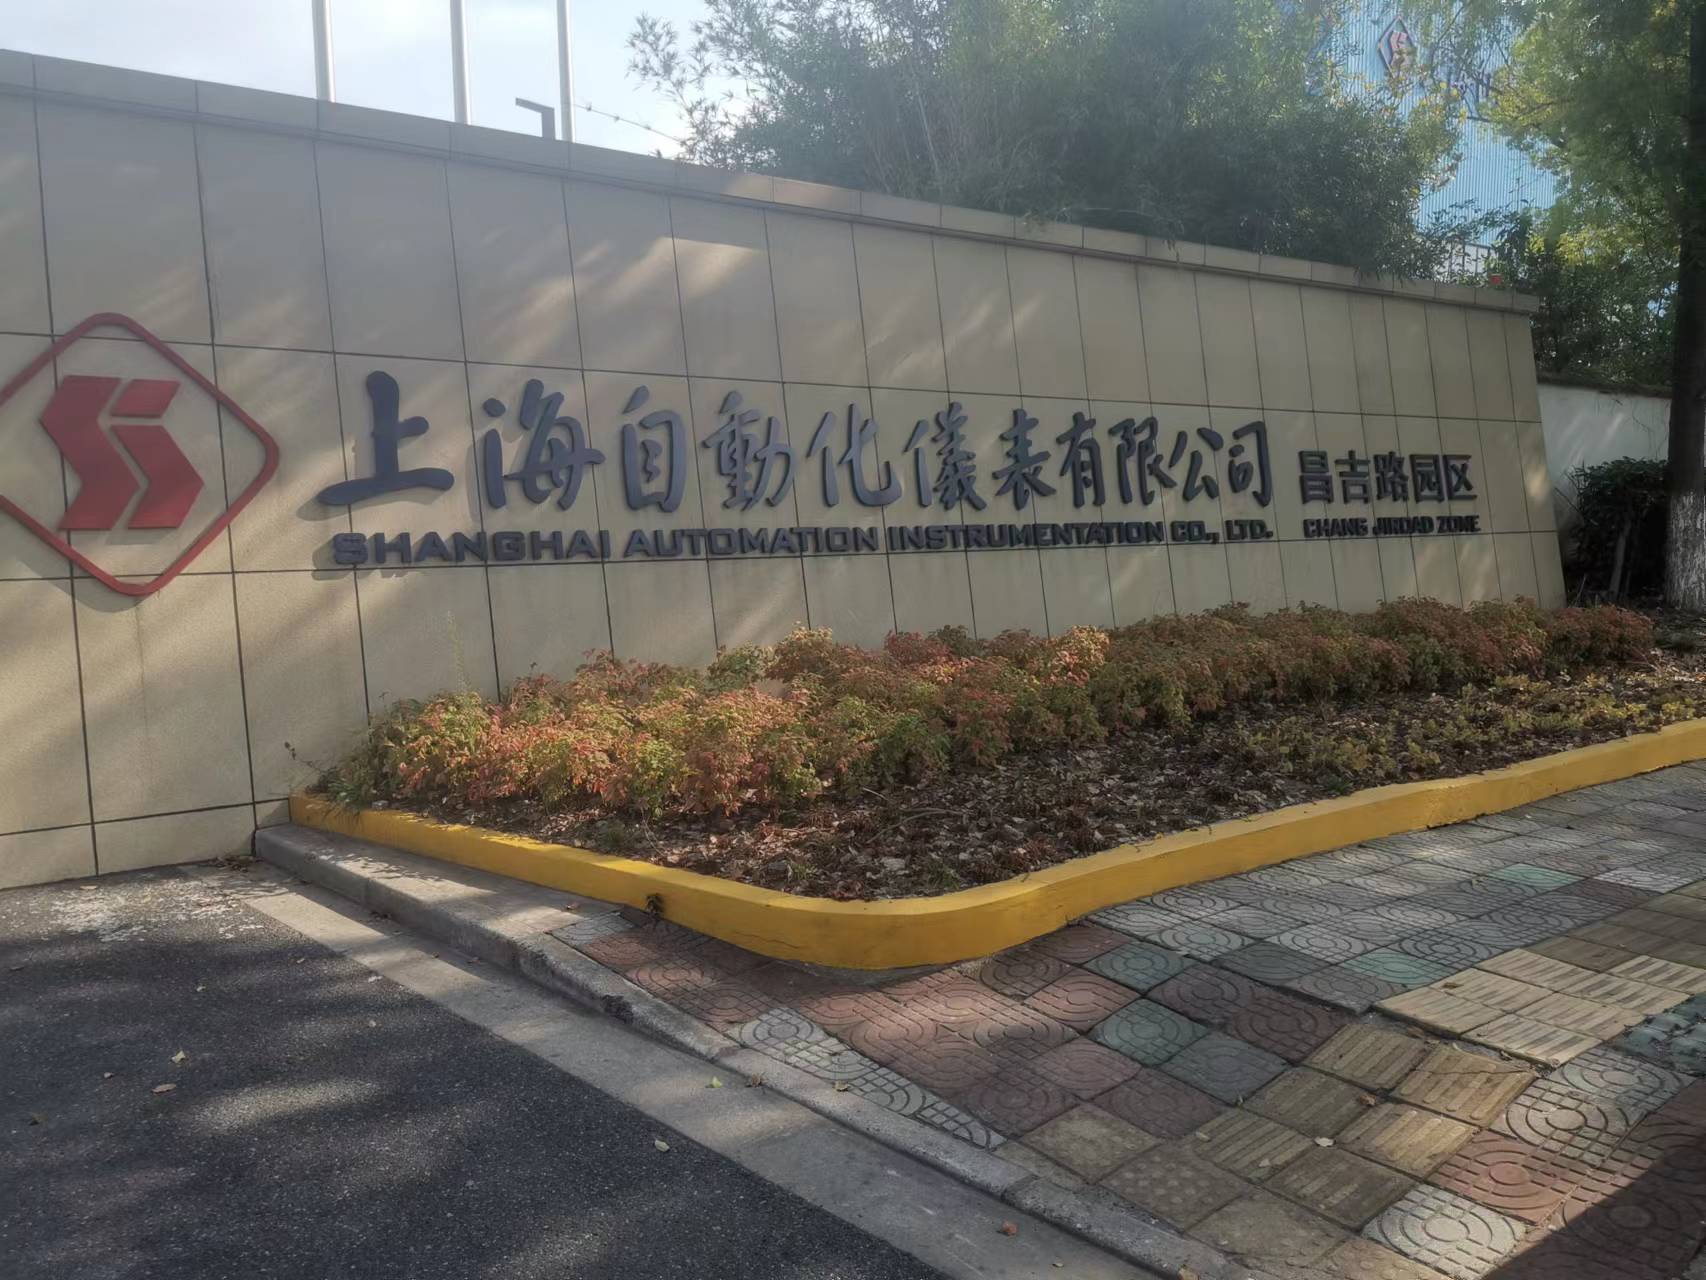 上海自动化仪表有限公司污水处理项目